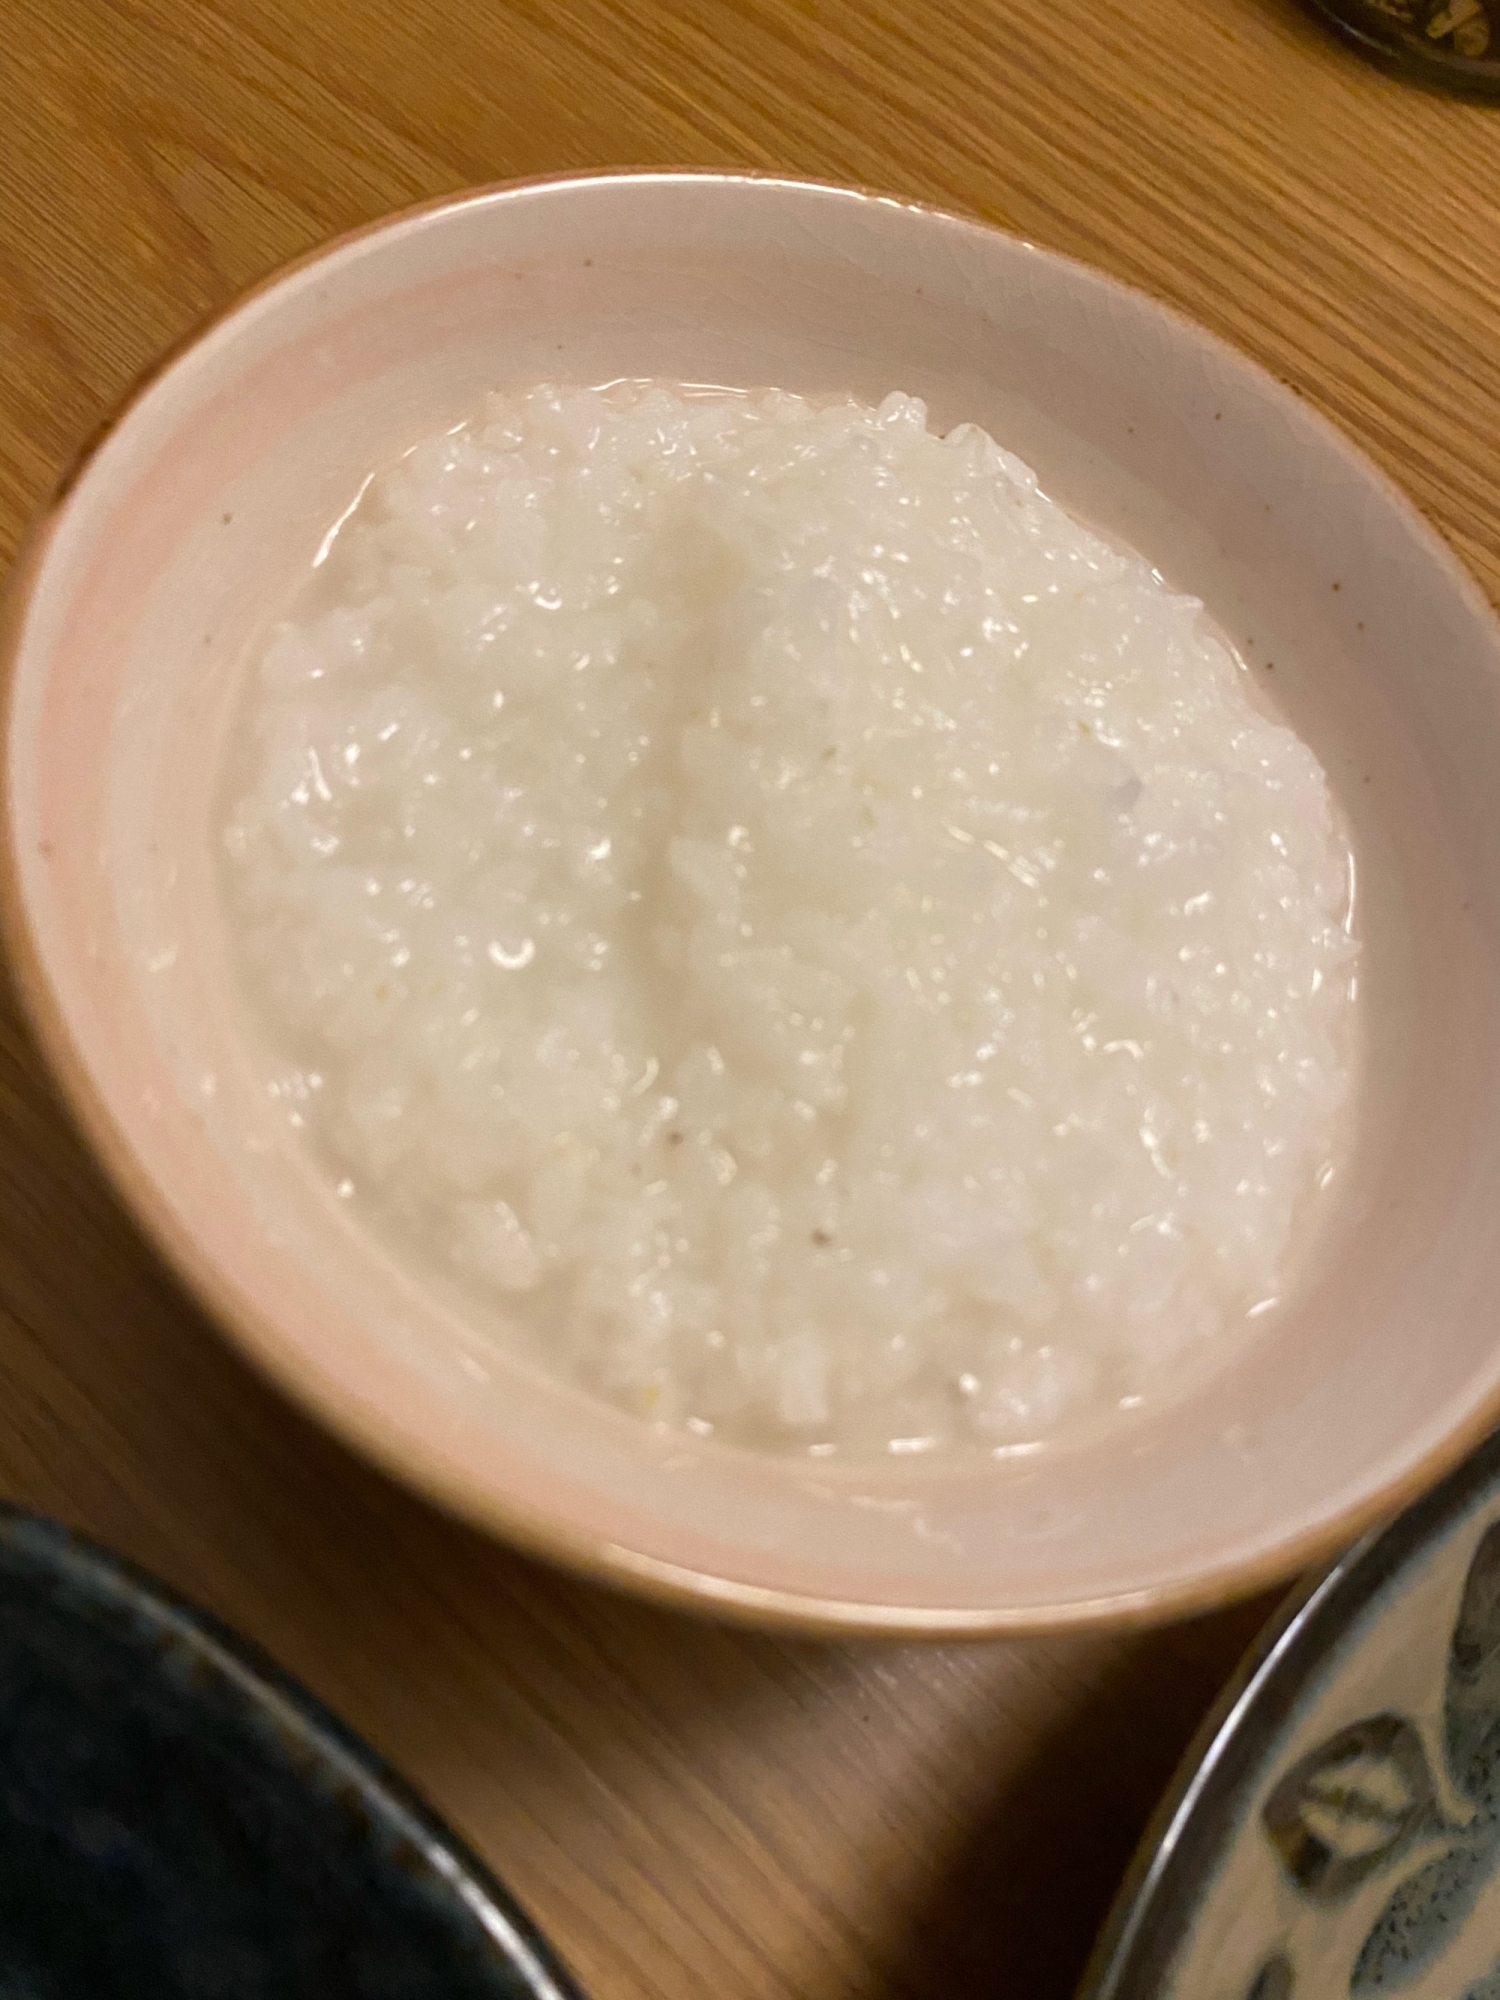 米から鍋で作るお粥